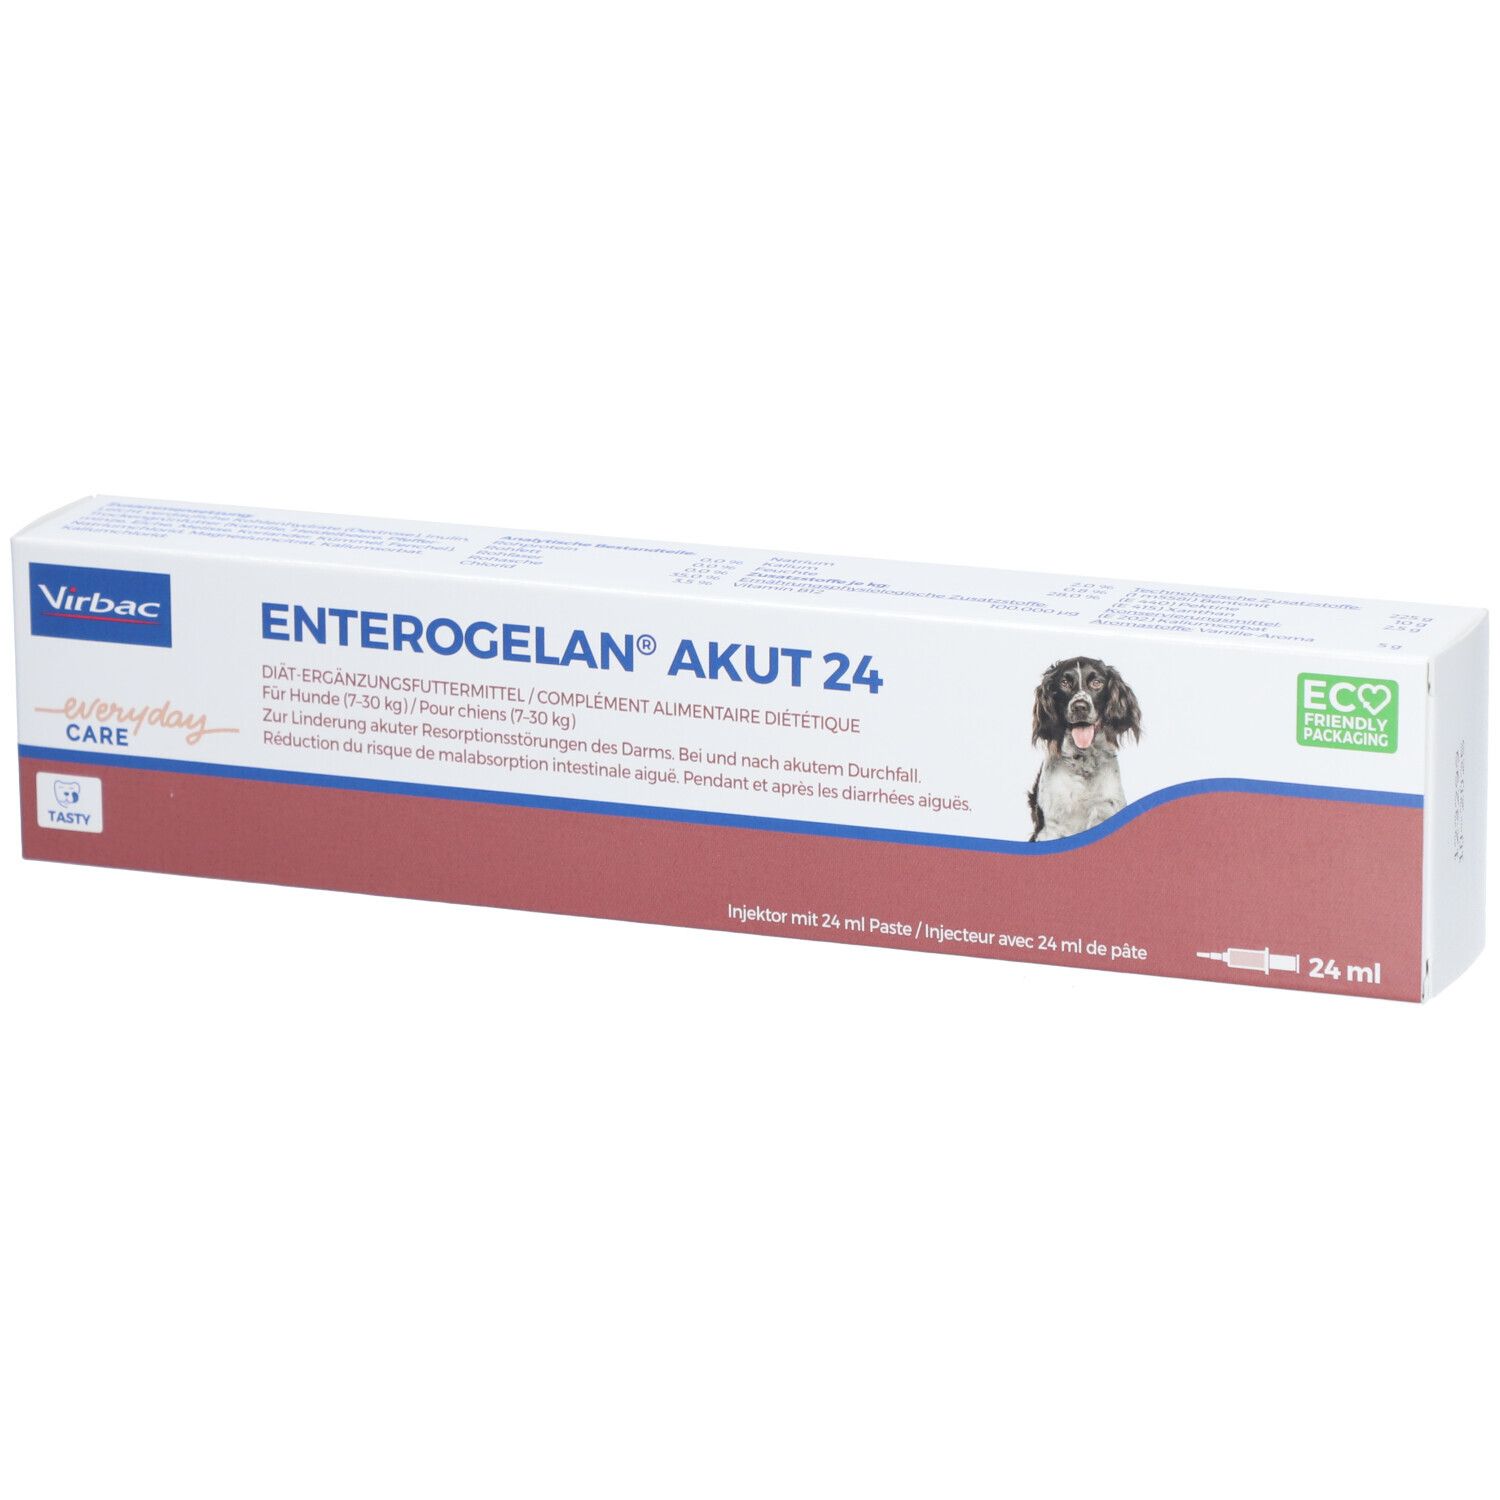 Image of Enterogelan® akut 24